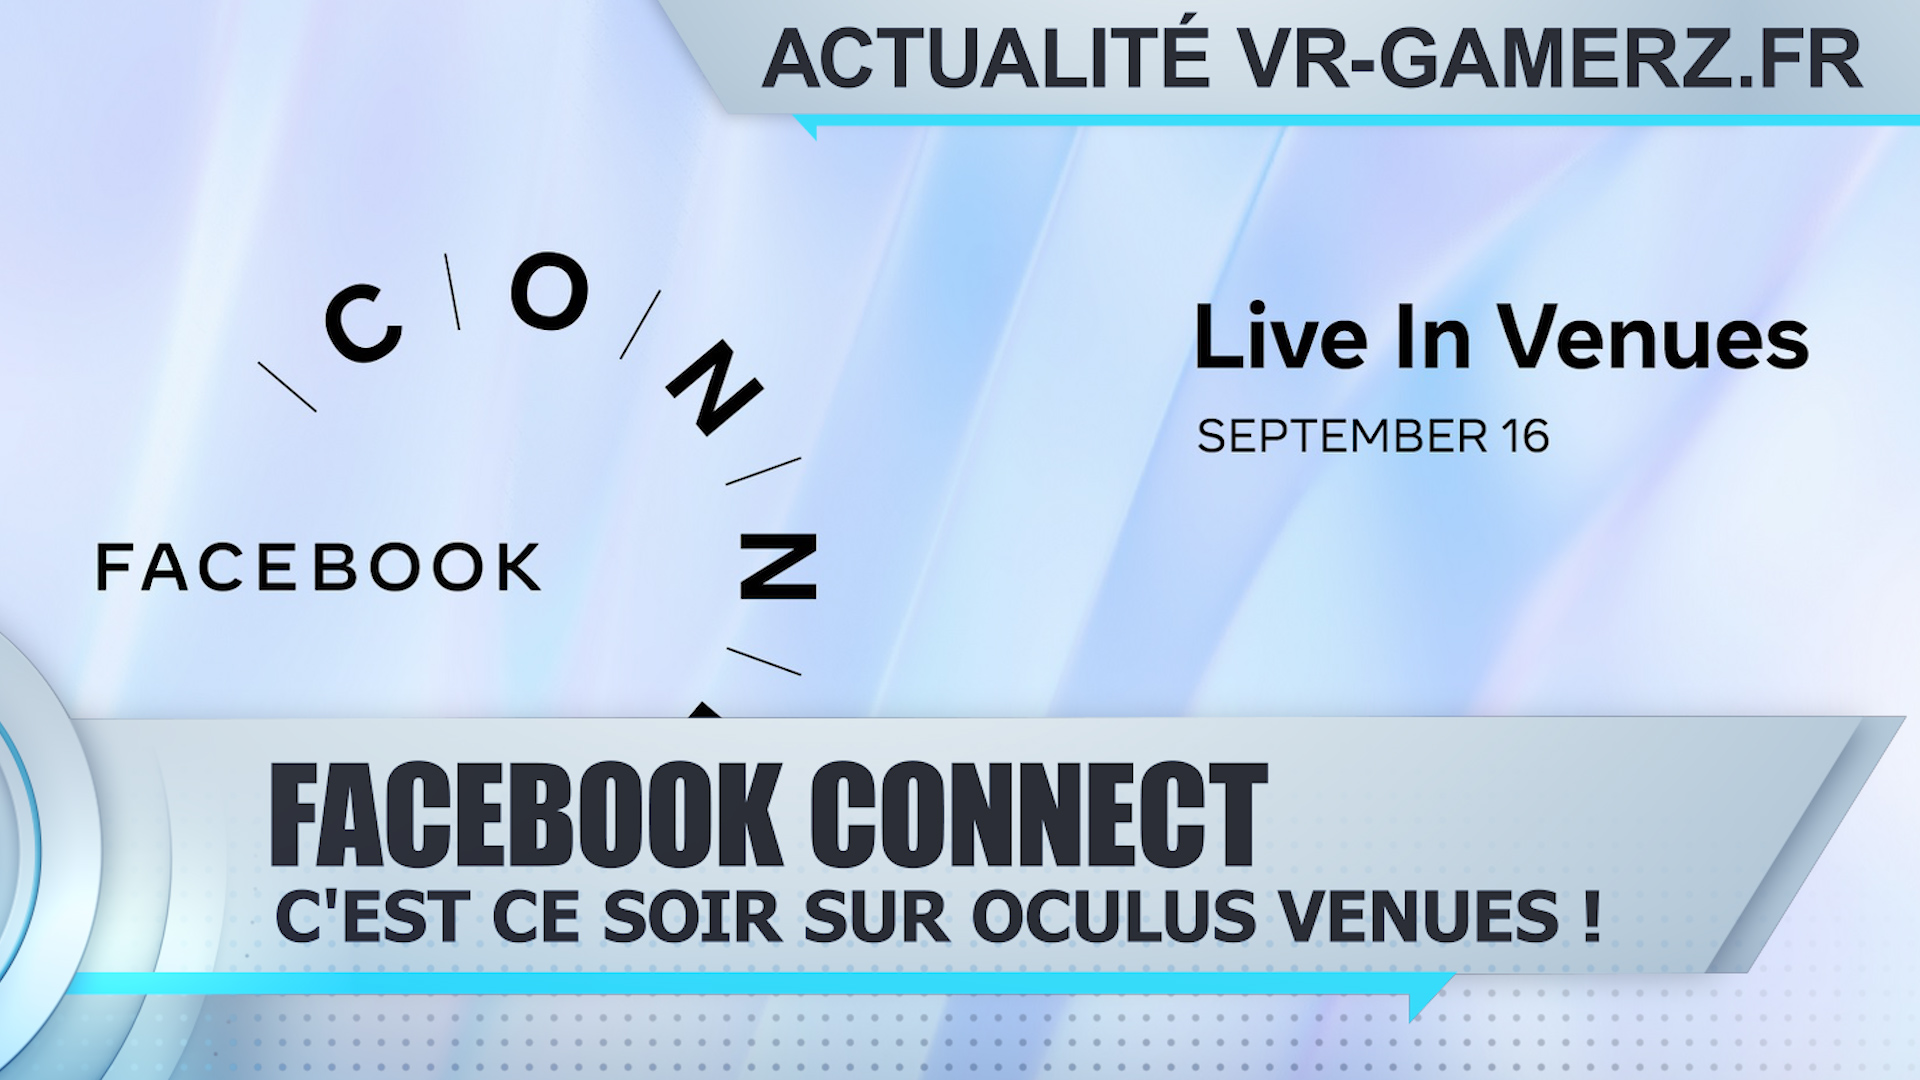 Facebook connect : C’est ce soir sur Oculus venues !